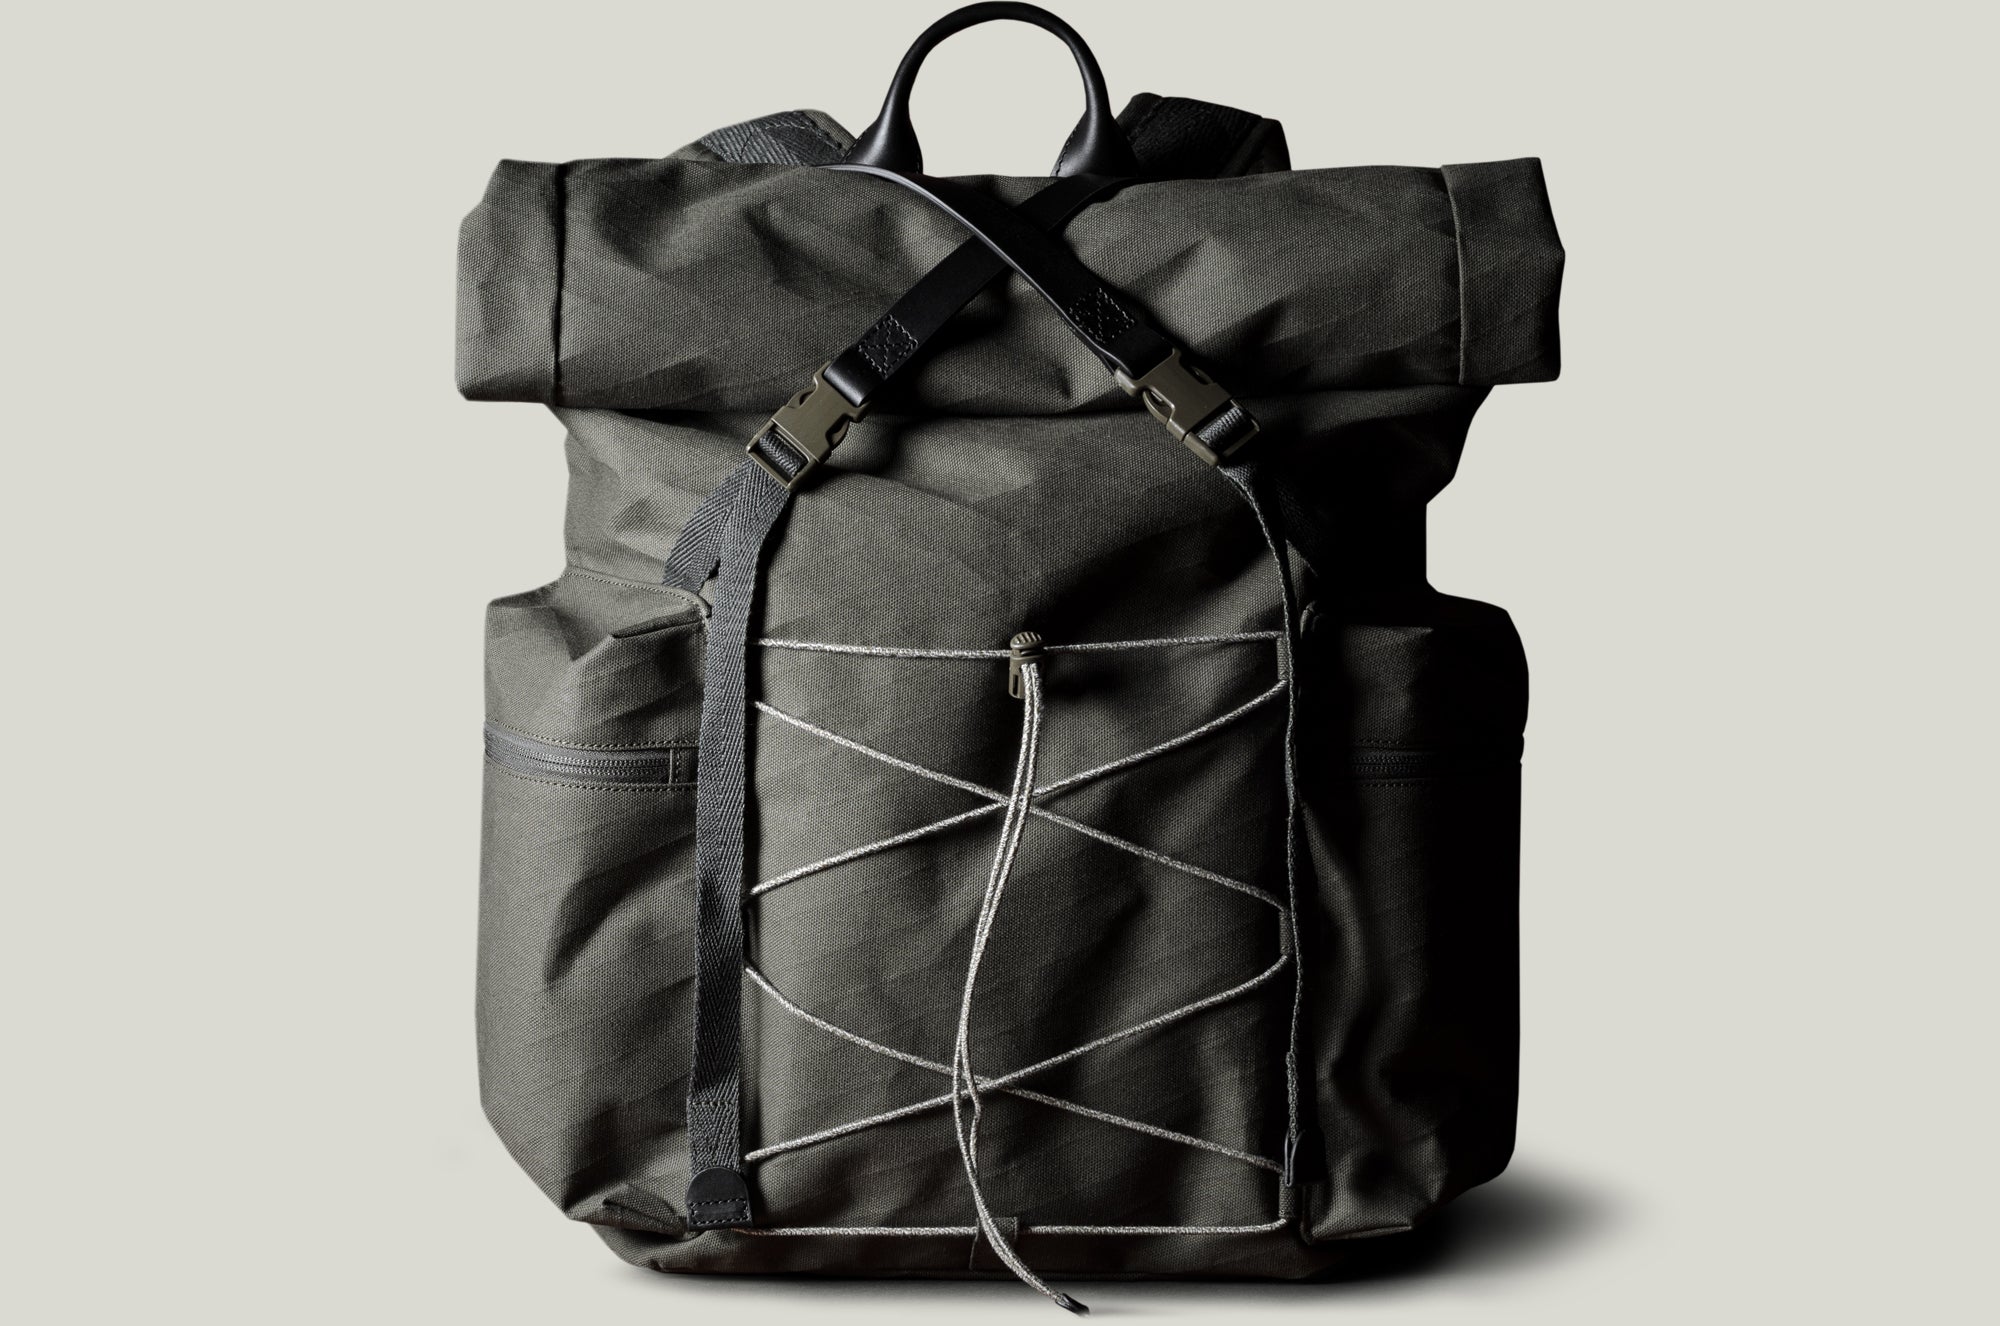 Roll-Top Backpack . Black Forest – hardgraft